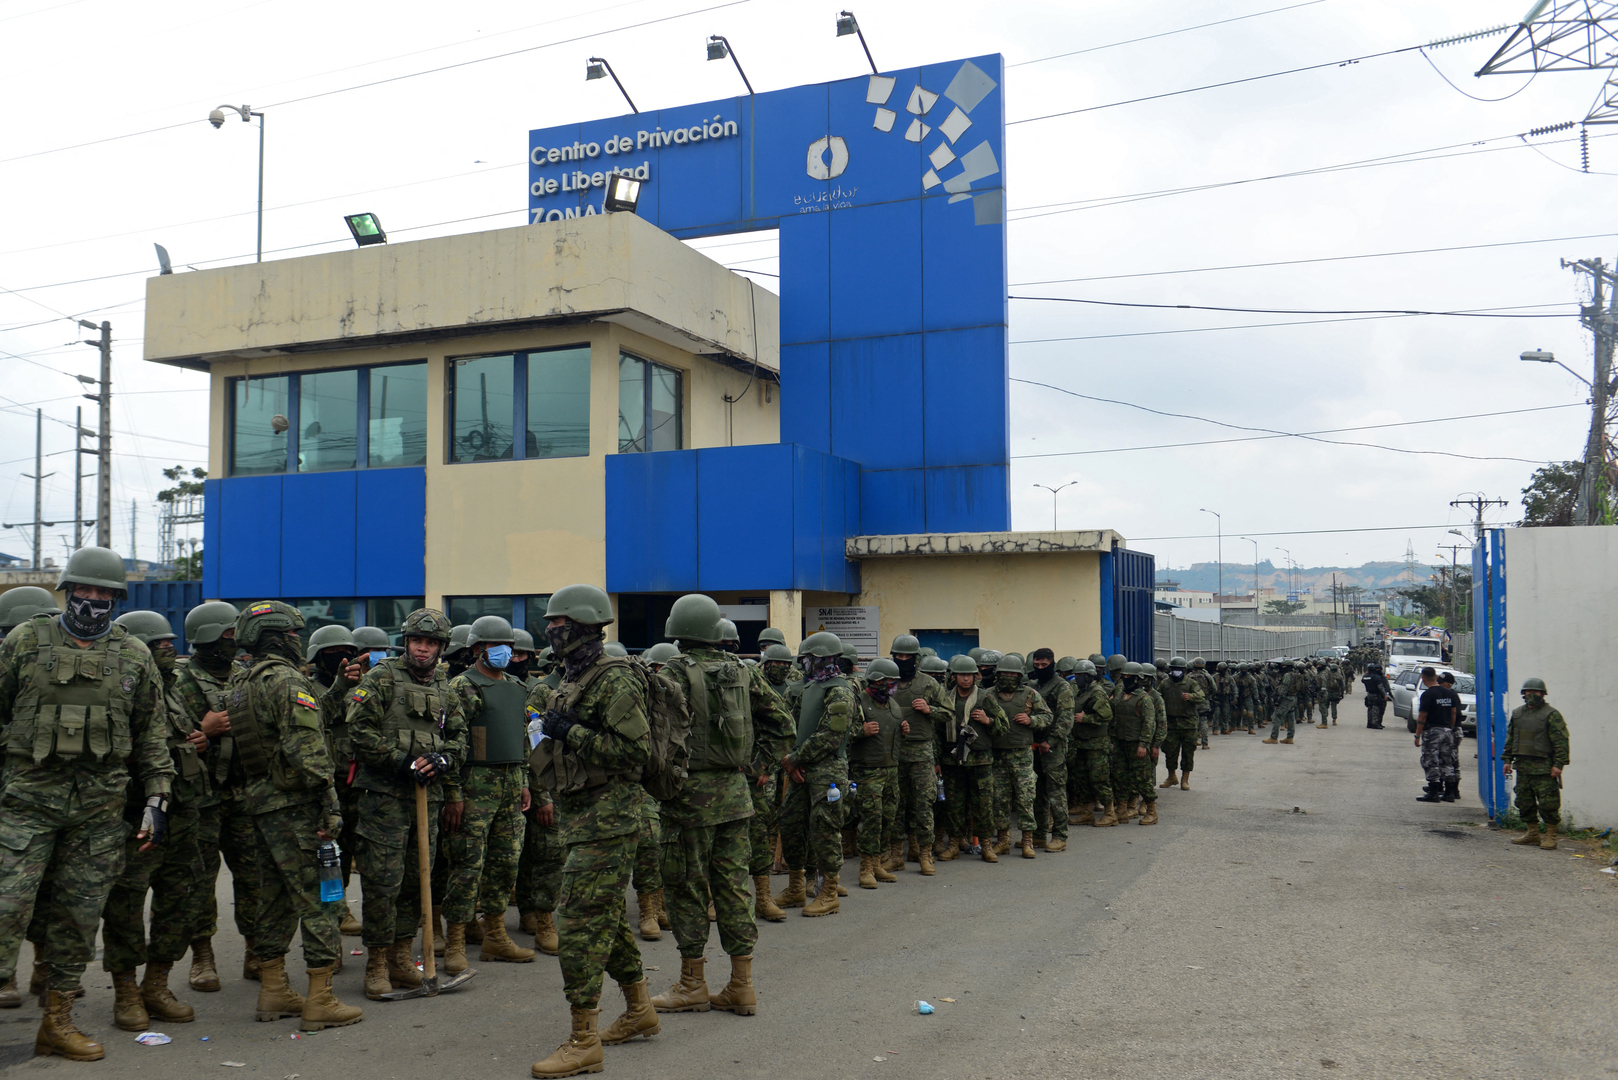 Meurtre de Villavicencio en Equateur : 4 000 agents interviennent dans une prison